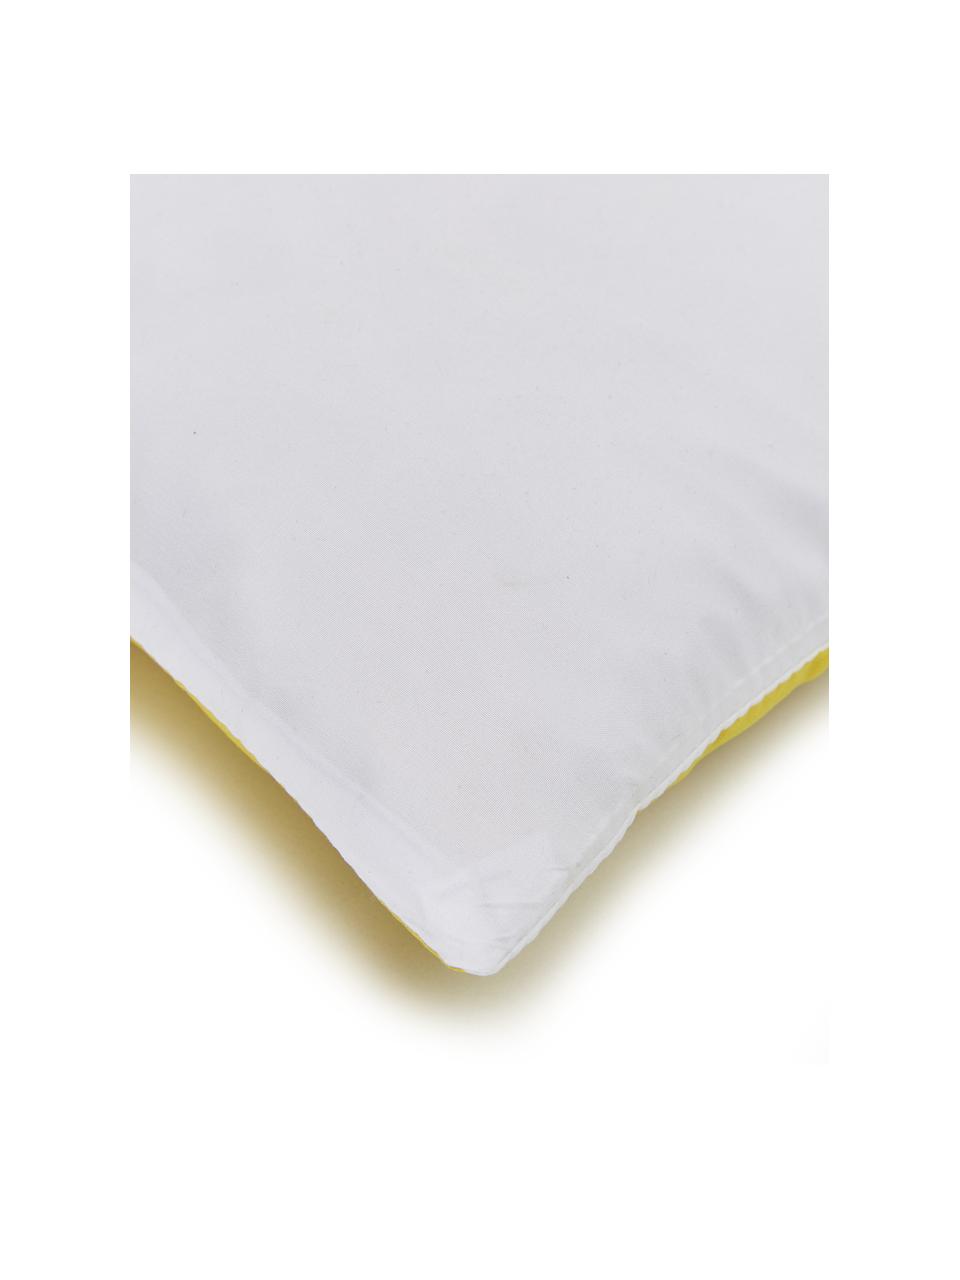 Kissenhülle Magdalena mit Streifen, 100% Polyester, Weiß, Gelb, Schwarz, 40 x 40 cm